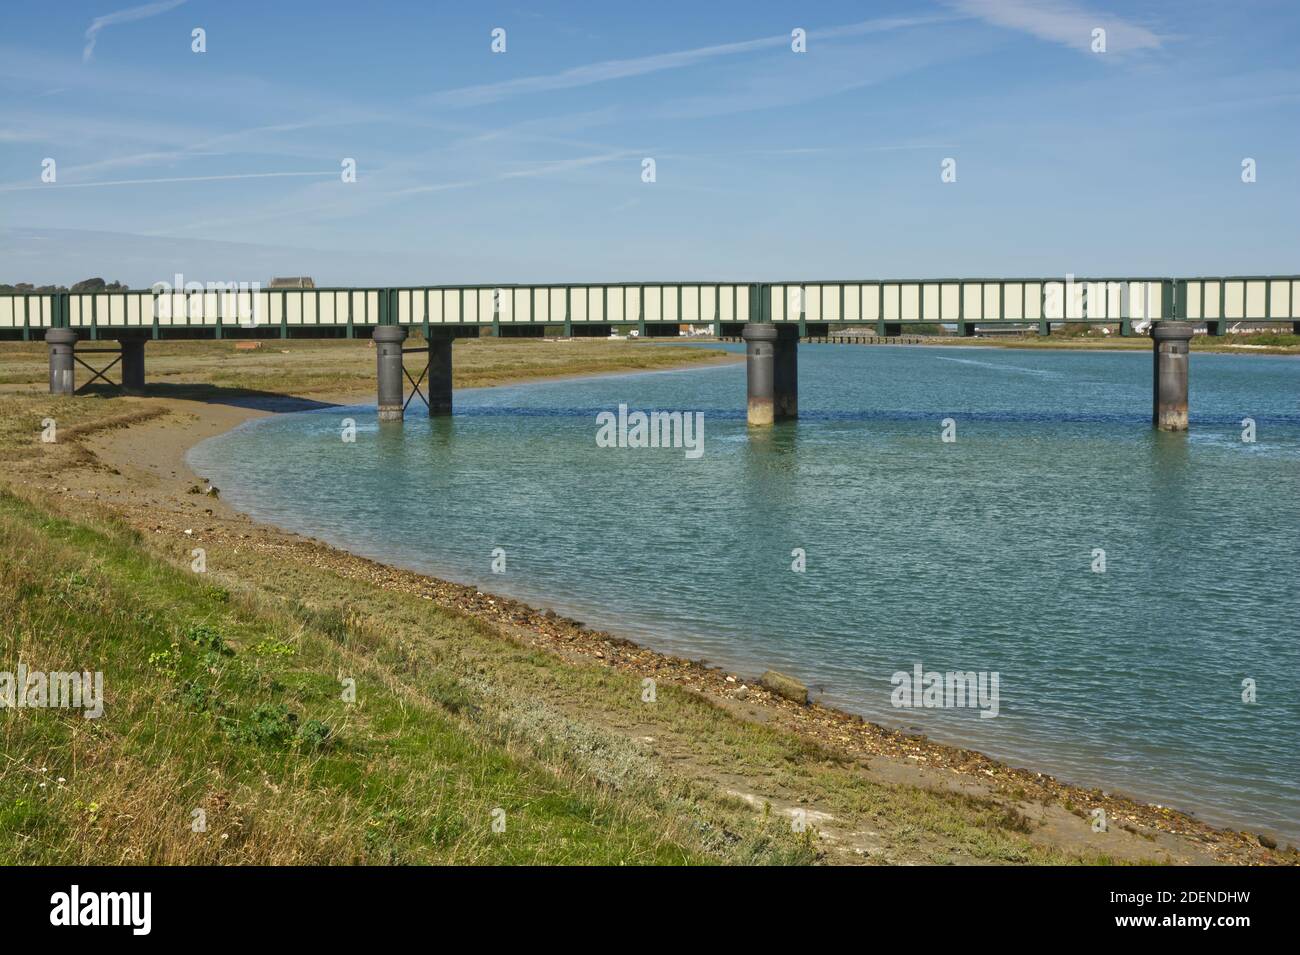 Pont ferroviaire traversant la rivière Adur à Shoreham, West Sussex, Angleterre Banque D'Images